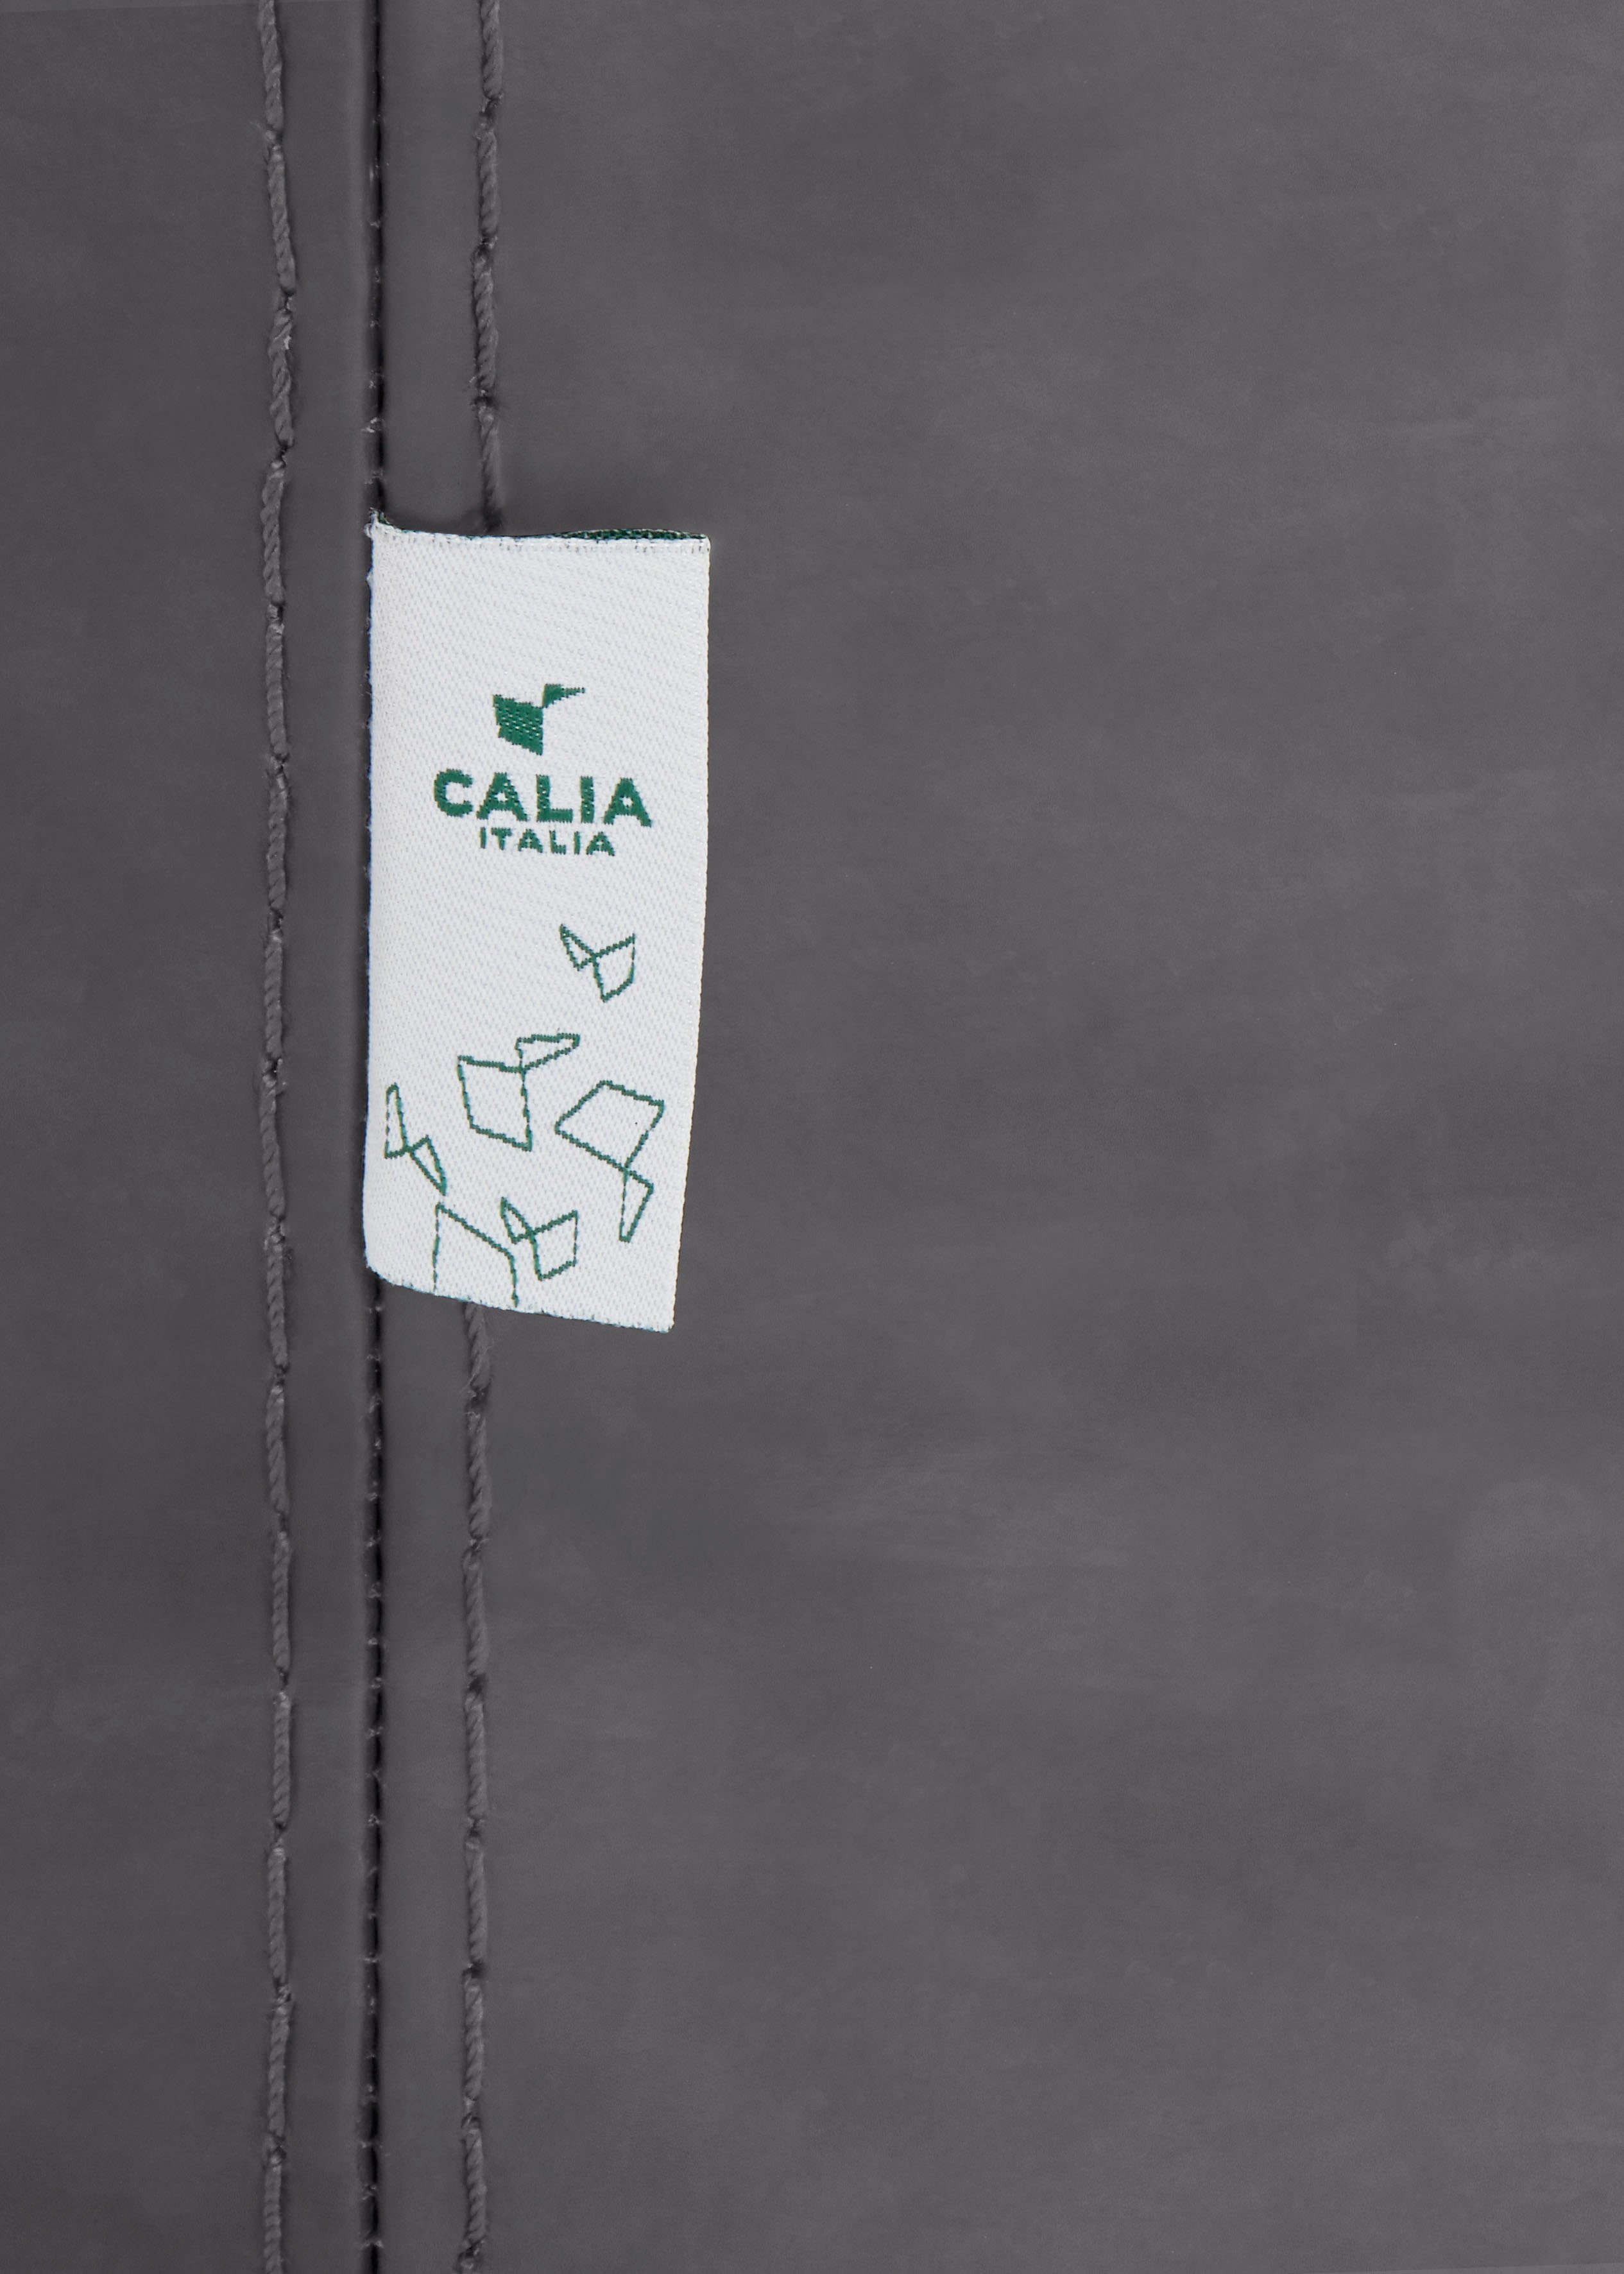 Luxus-Microfaser Care Gaia, CALIA Ginevra Hydro ash ITALIA mit Sessel